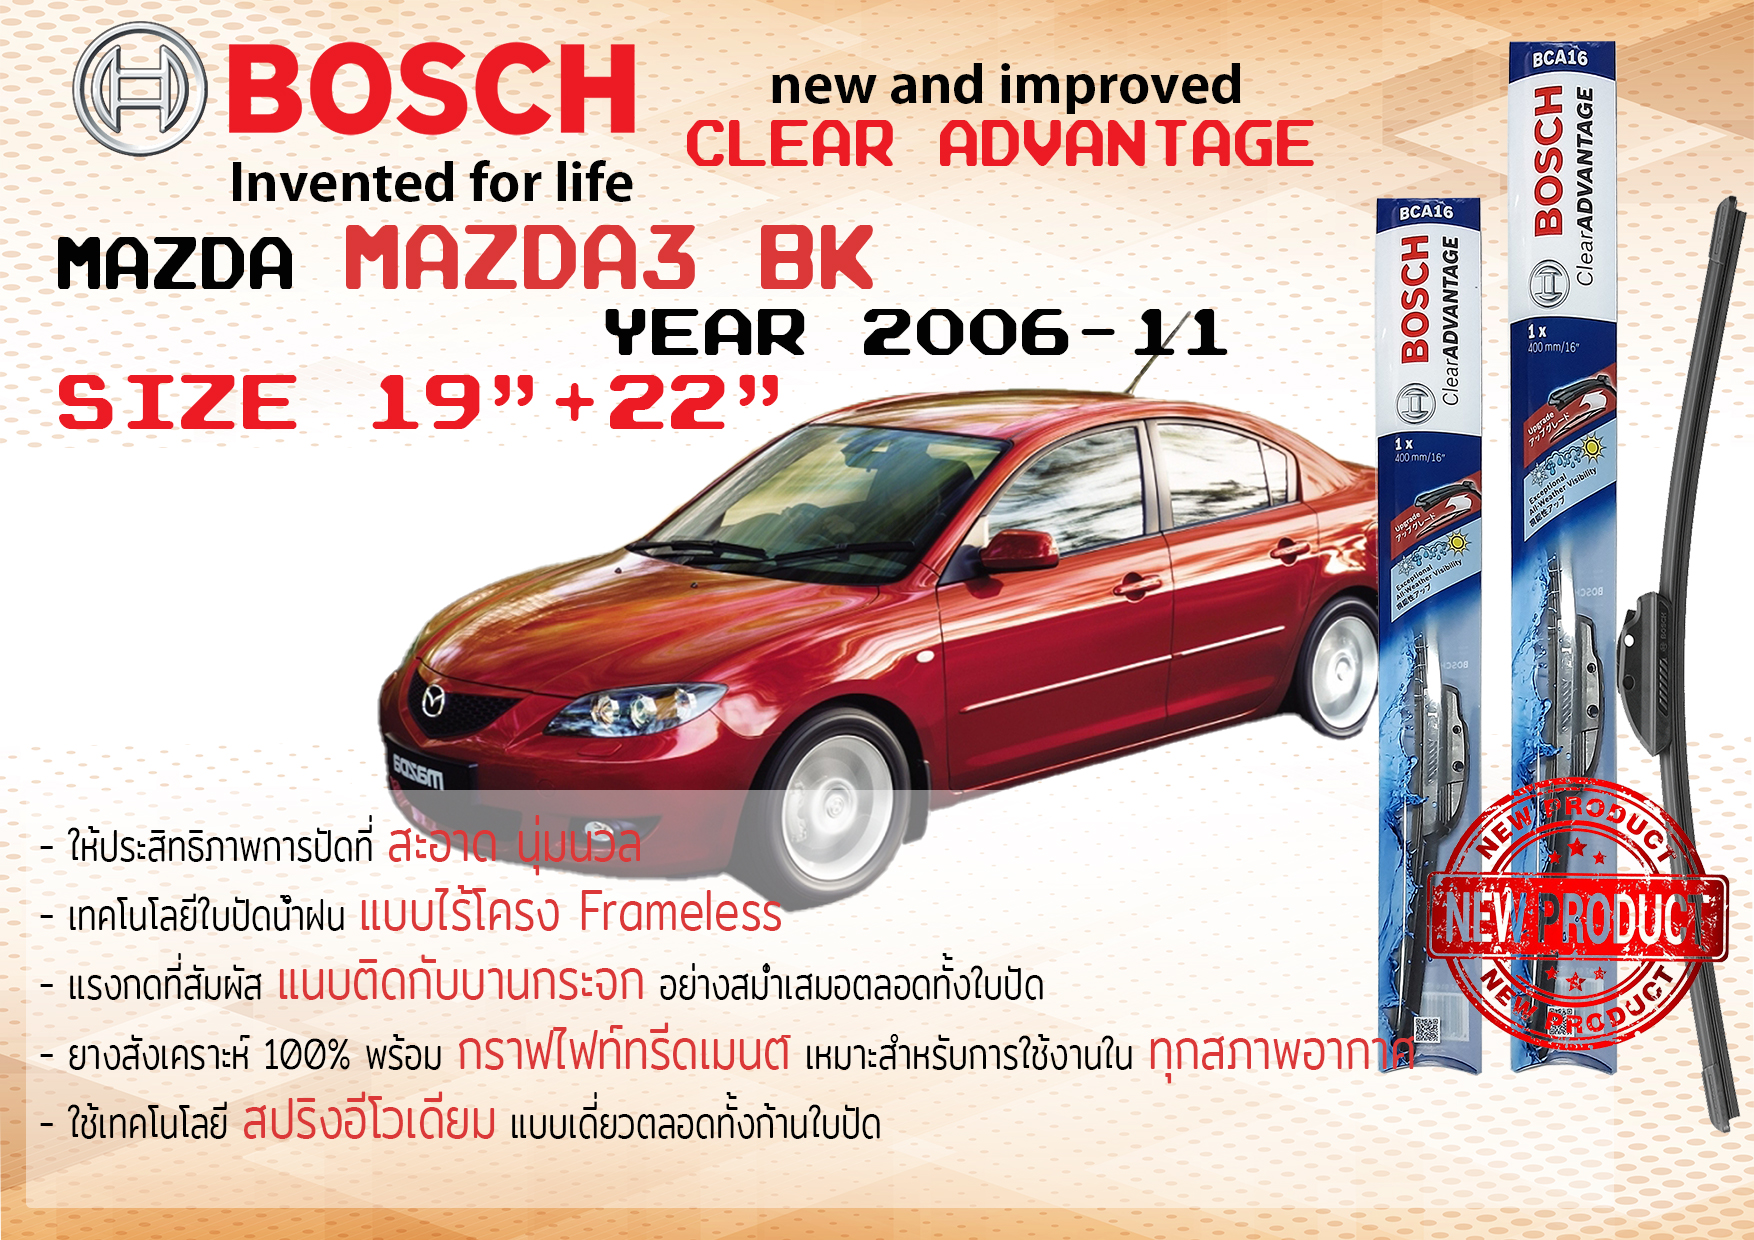 ใบปัดน้ำฝน คู่หน้า Bosch Clear Advantage frameless ก้านอ่อน ขนาด 19”+22” สำหรับรถ Mazda 3 BK, AXELA ปี 2006-2010 ปี 06,07,08,09,10 มาสด้า มาซดา มาสดา สาม บีเค ทนแสง UV